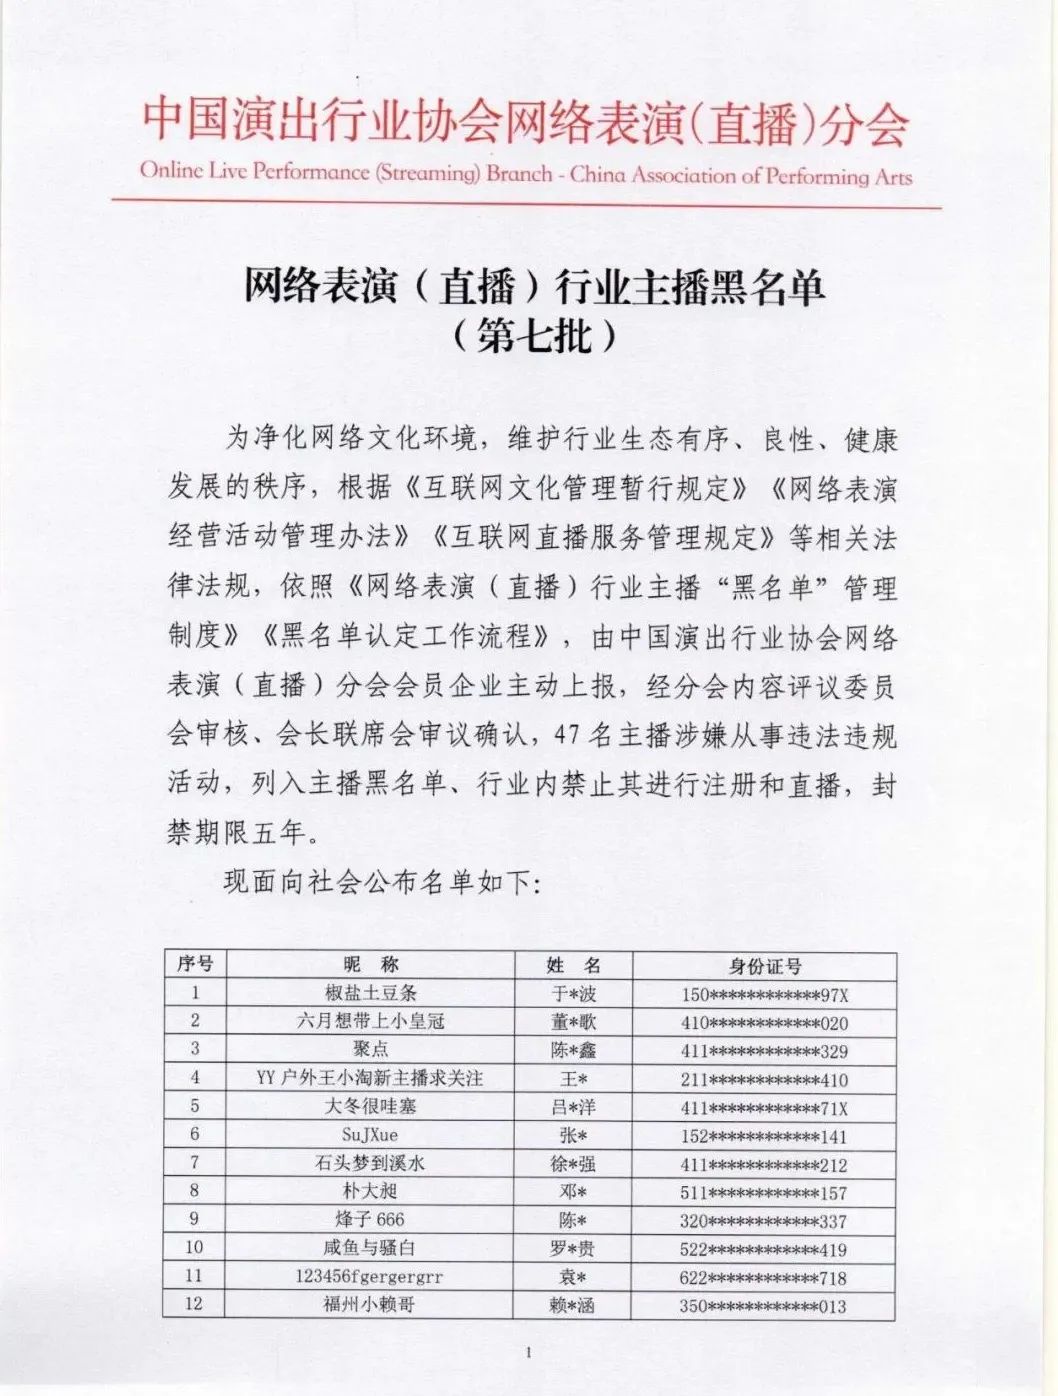 47名主播被列入黑名单；<a href='https://www.zhouxiaohui.cn
' target='_blank'>腾讯直播</a>开启微信社群品牌扶持计划 | 新榜情报-第2张图片-周小辉博客